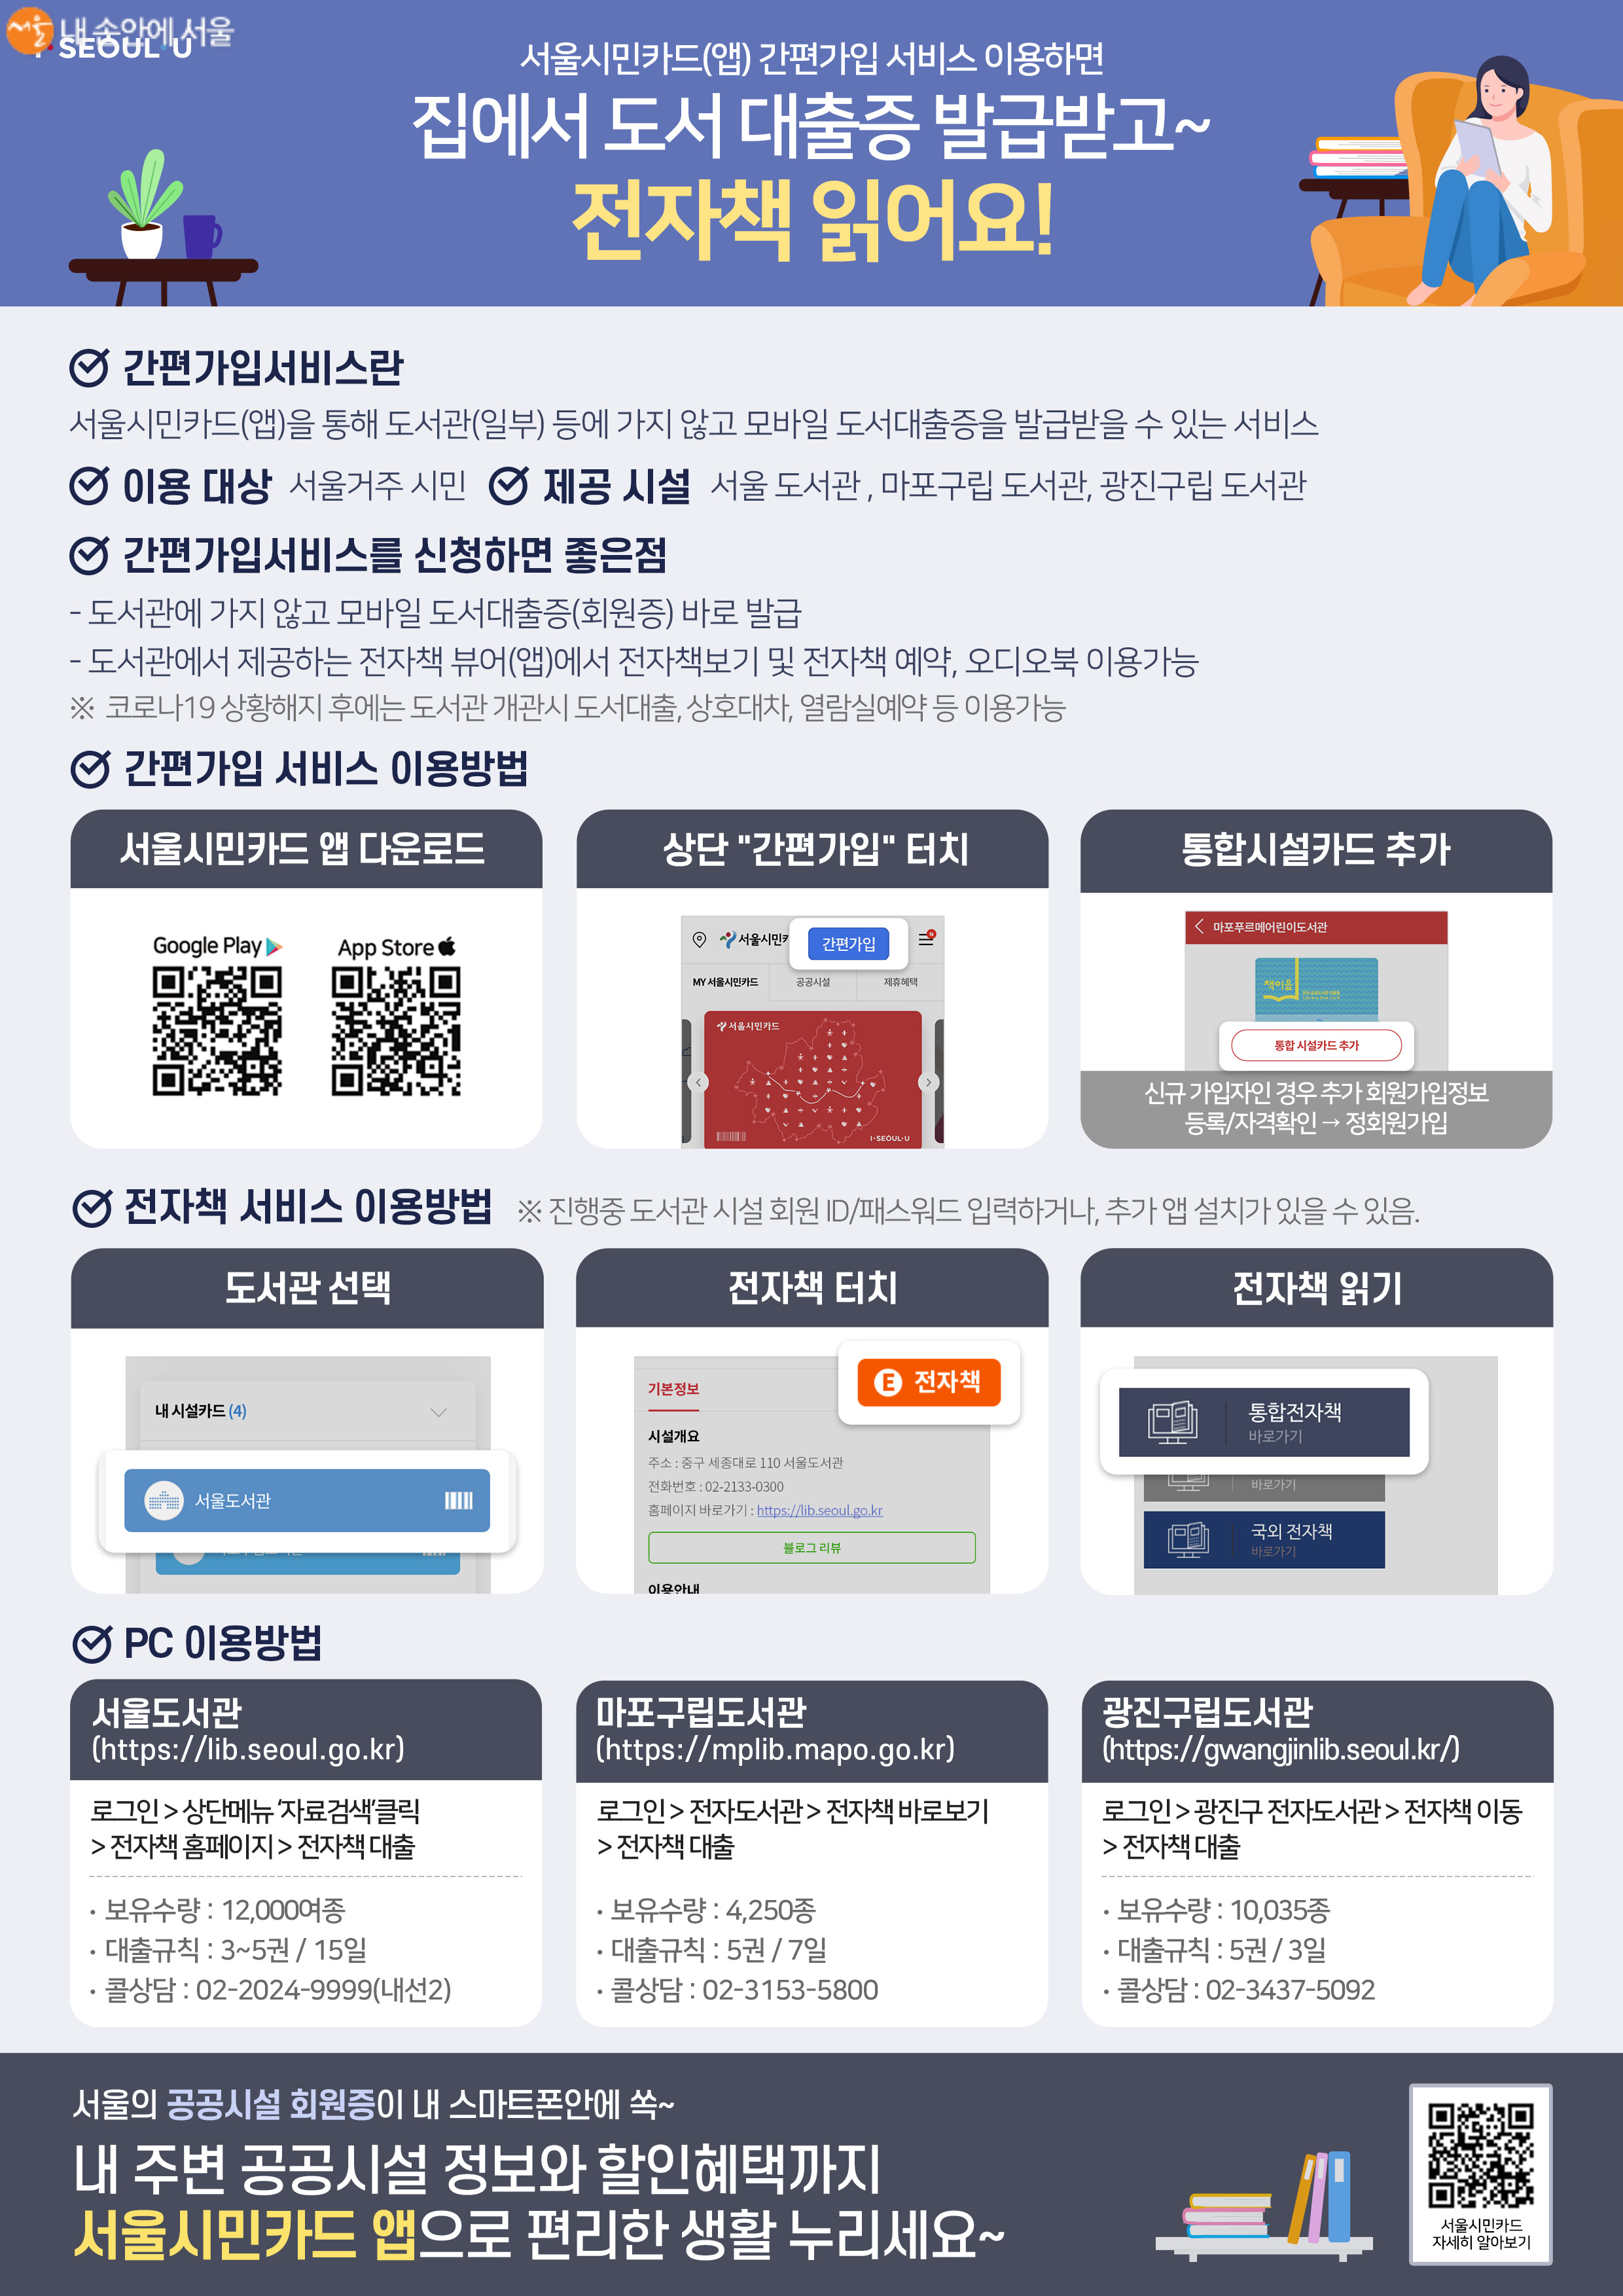 서울시민카드 앱으로 즐길 수 있는 전자도서관 이용방법 